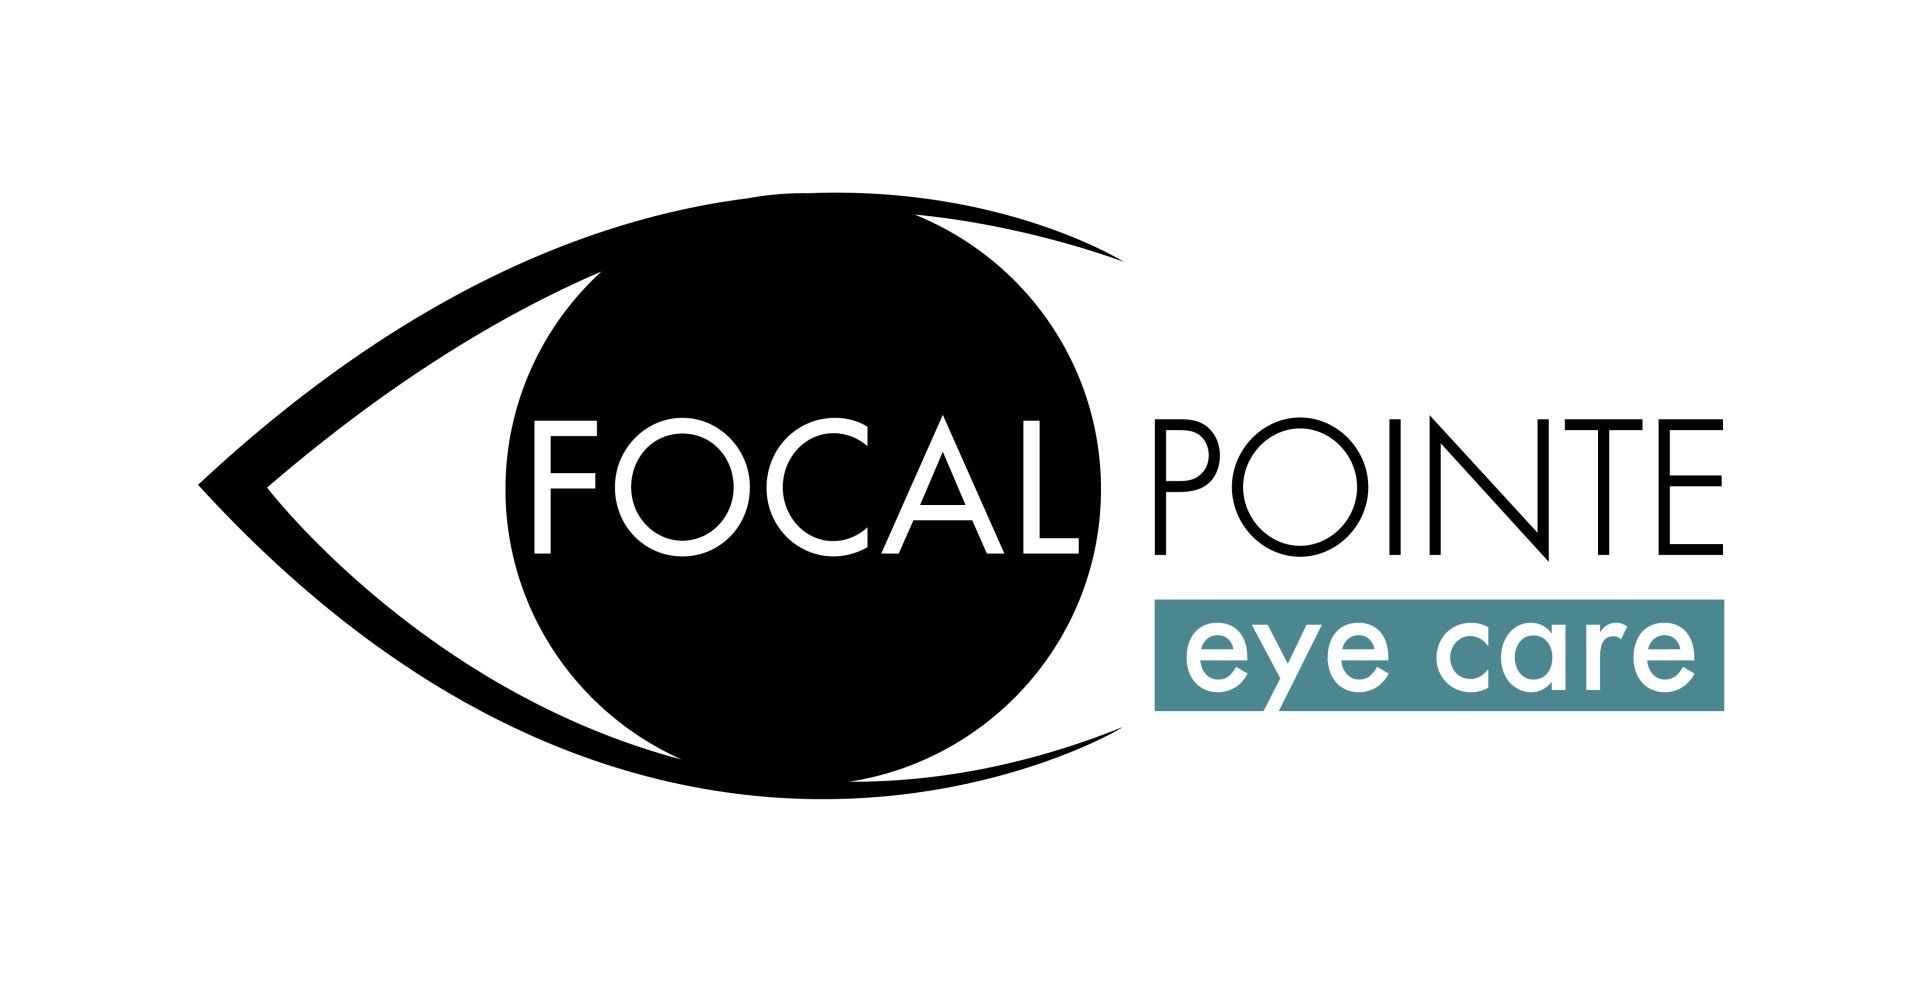 Focal Pointe Eye Care logo